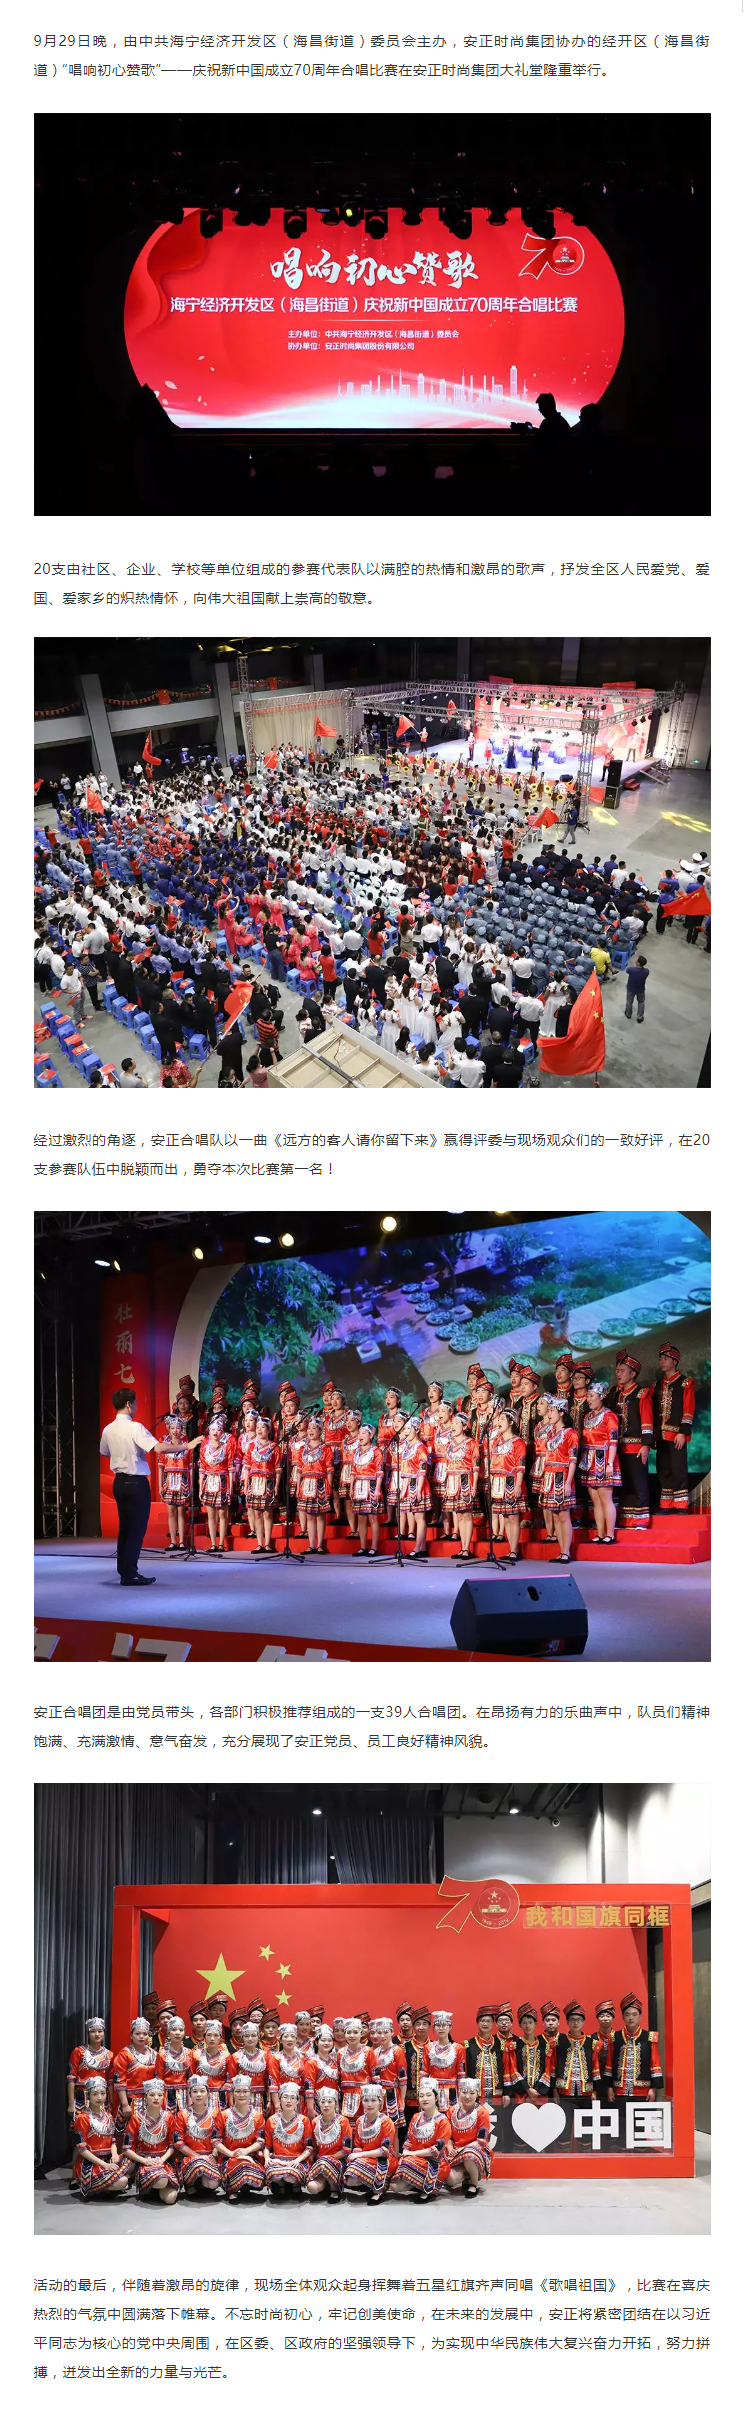 唱响初心赞歌丨安正喜获海宁经开区庆祝新中国成立70周年合唱比赛第一名.png